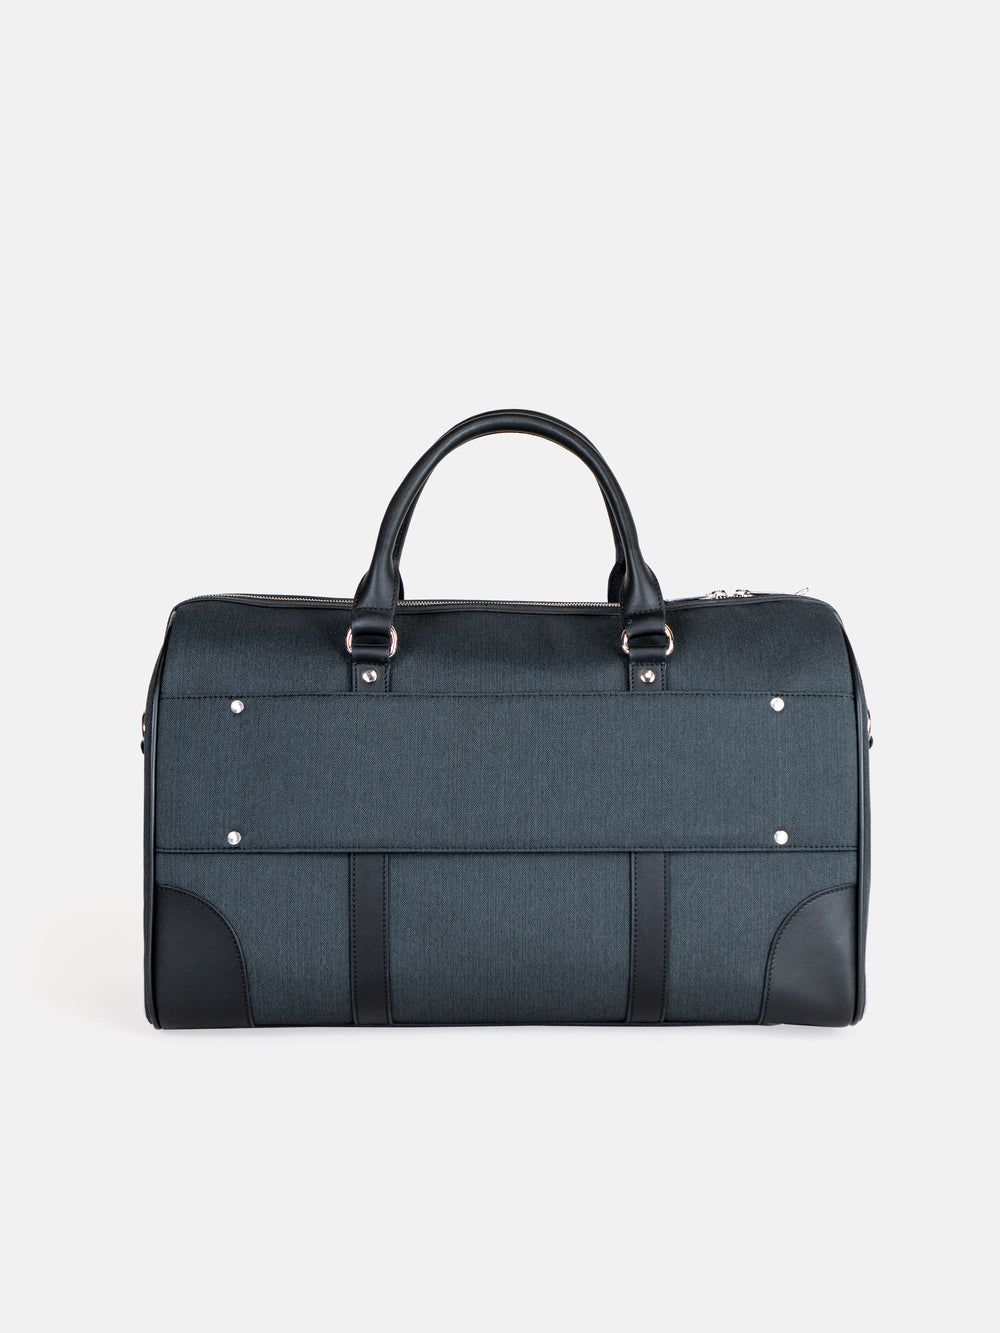 Louis Vuitton, Bags, Louis Vuitton Small Travelduffel Bag